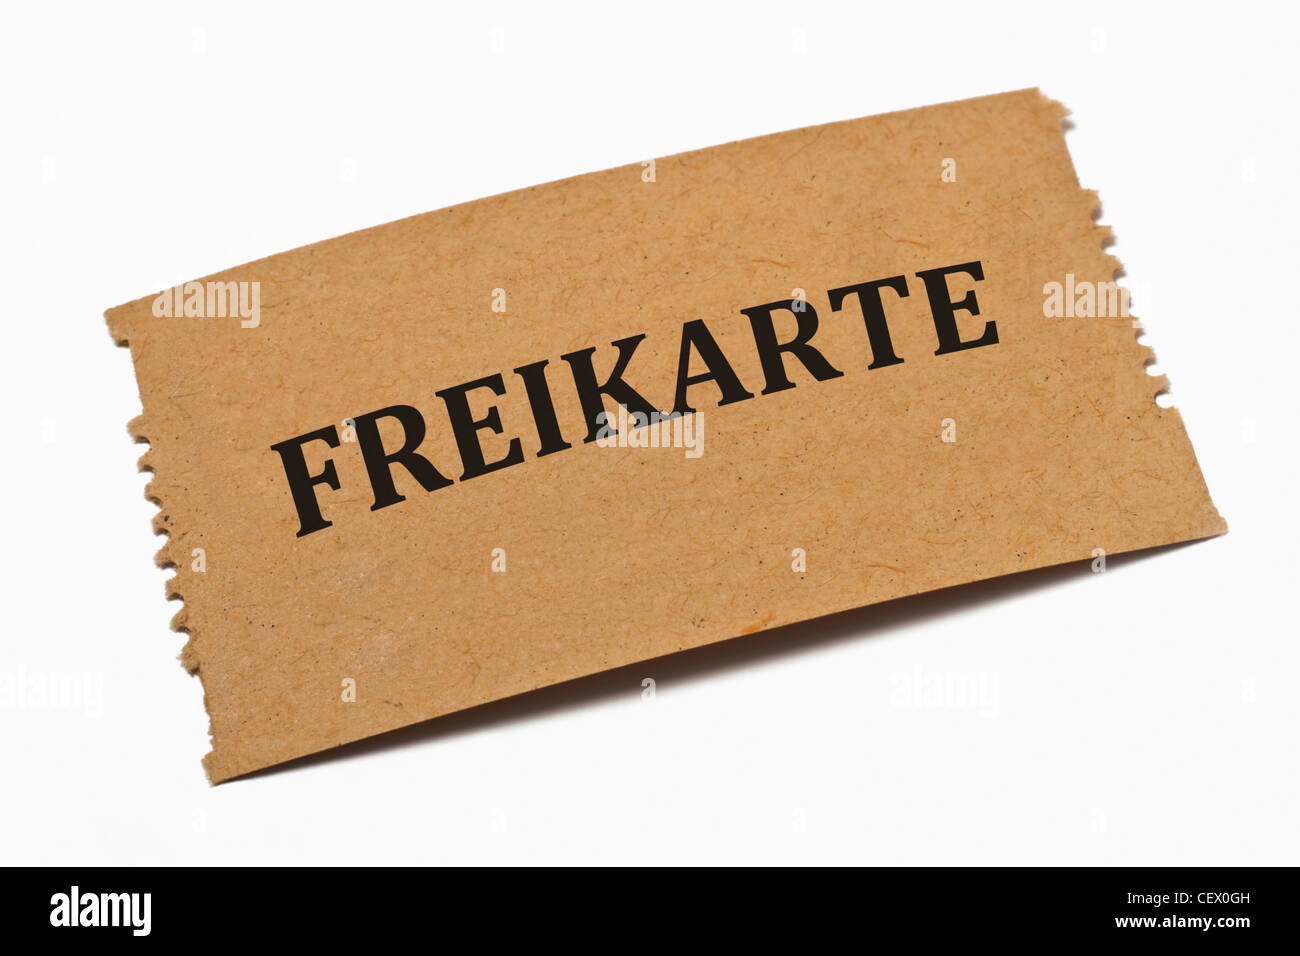 Detailansicht einer Karte aus Papier mit der Aufschrift Freikarte | Detail photo of a paper card with the inscription Freikarte Stock Photo